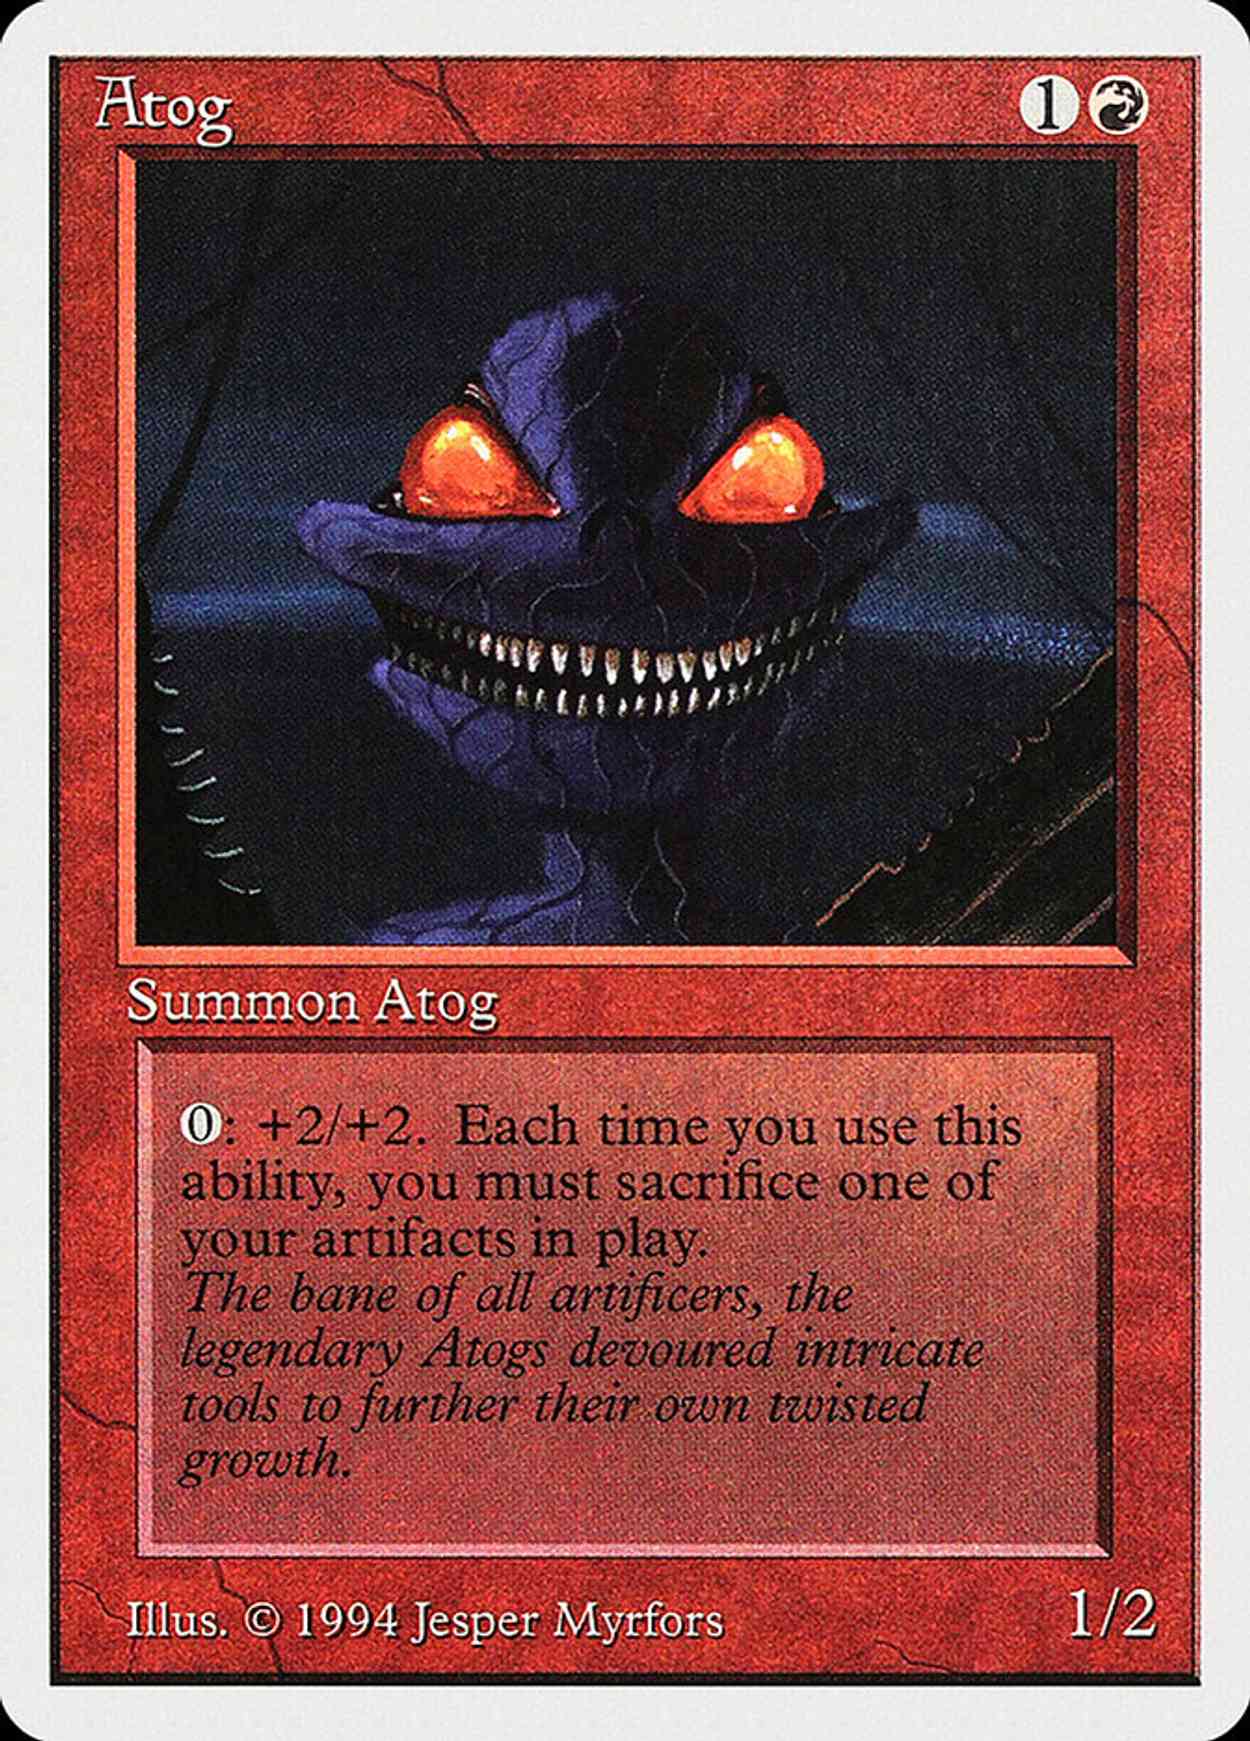 Atog magic card front